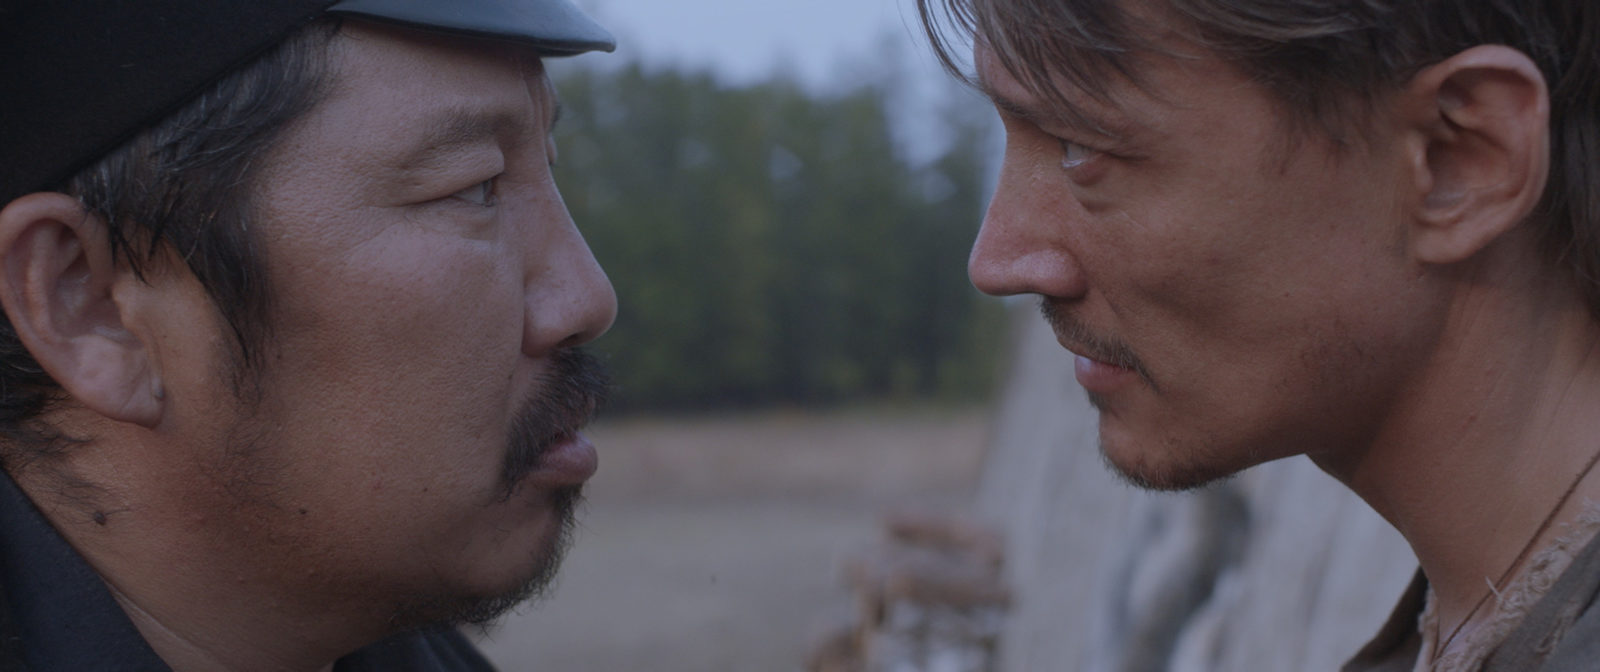 Мировая премьера якутского фильма «Нуучча» состоится 29 августа